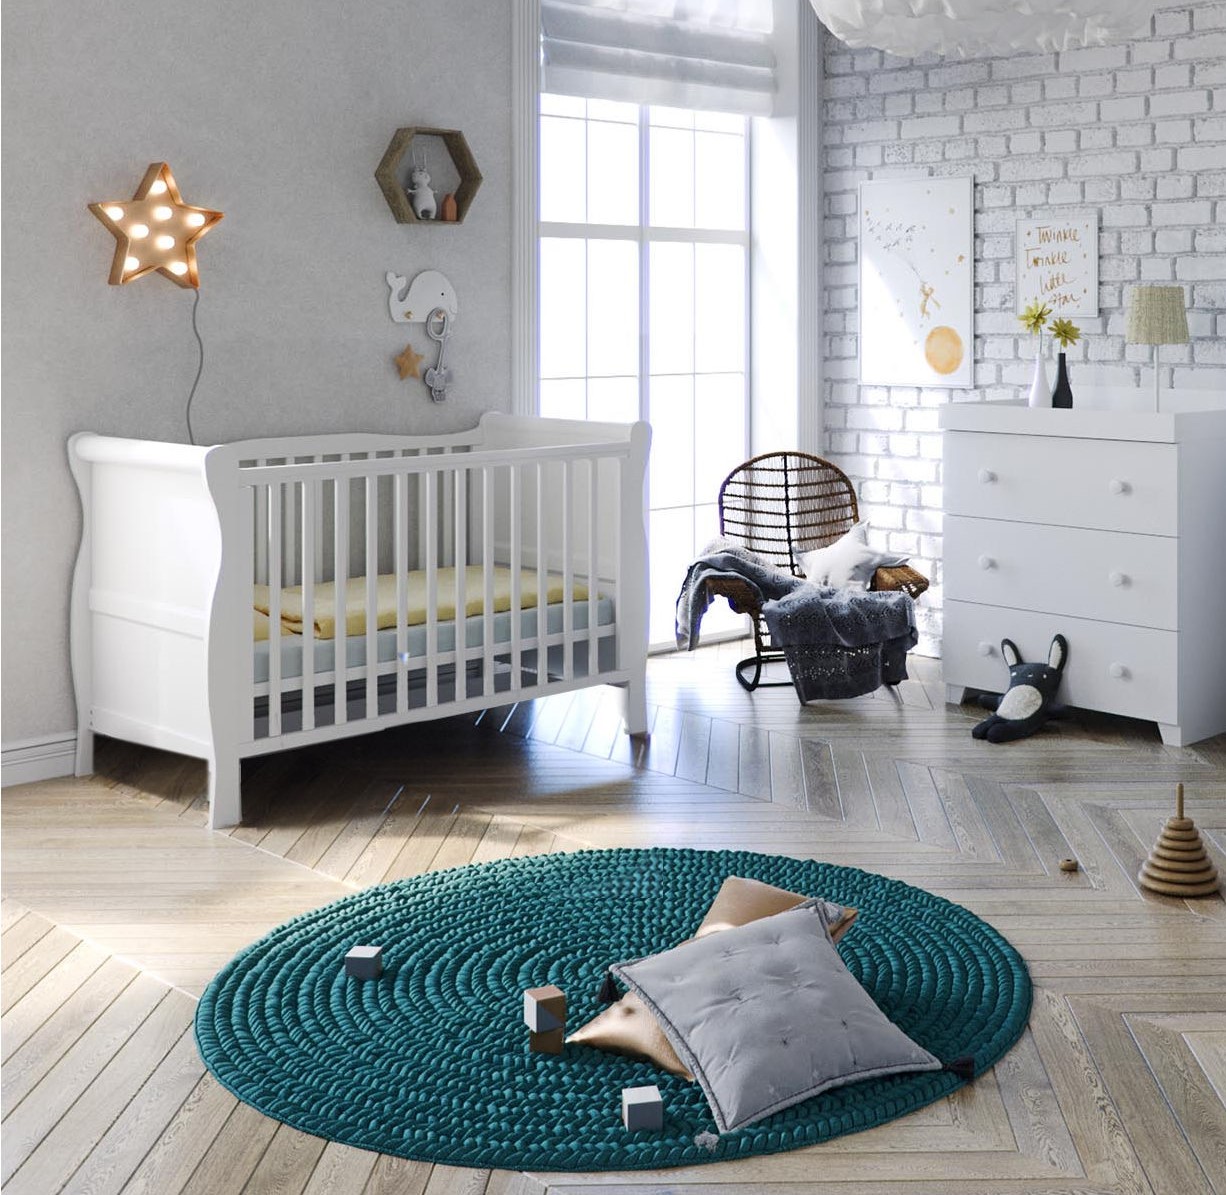 Little Acorns Sleigh 3 Piece Nursery Room Set - Cot Bed & Dresser - White